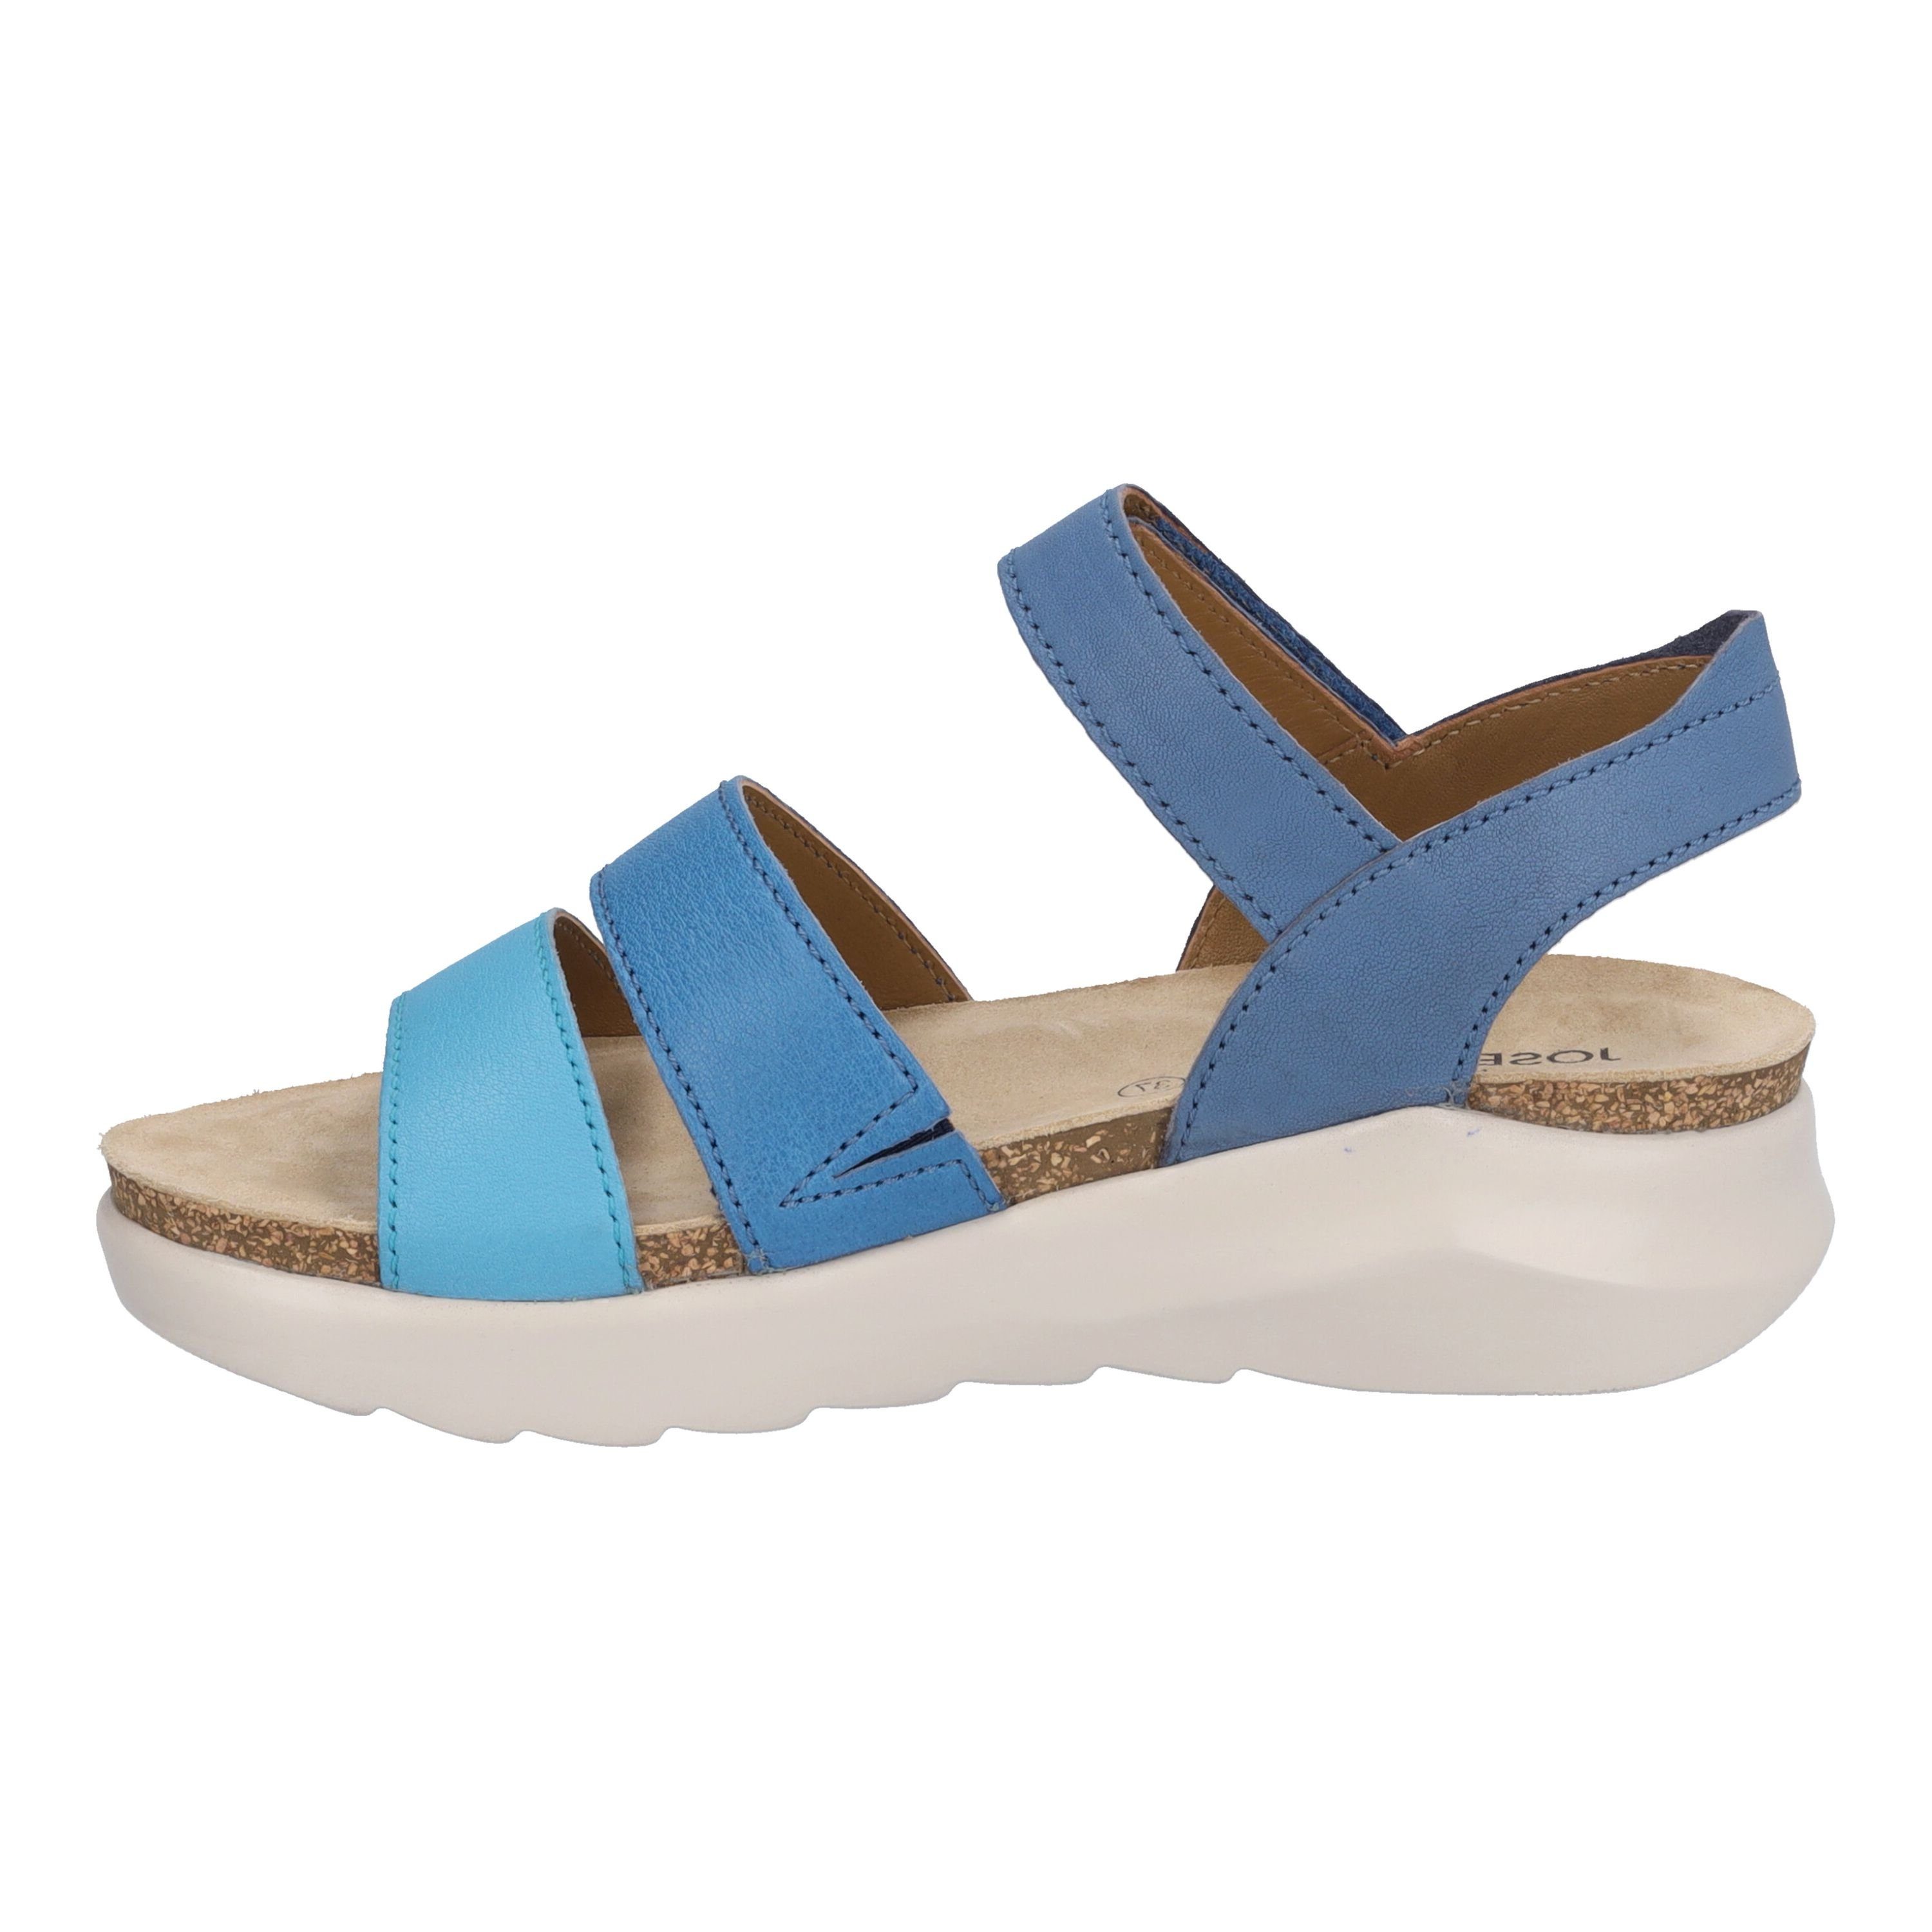 06, Sandale blau blau-multi Seibel Josef Celine